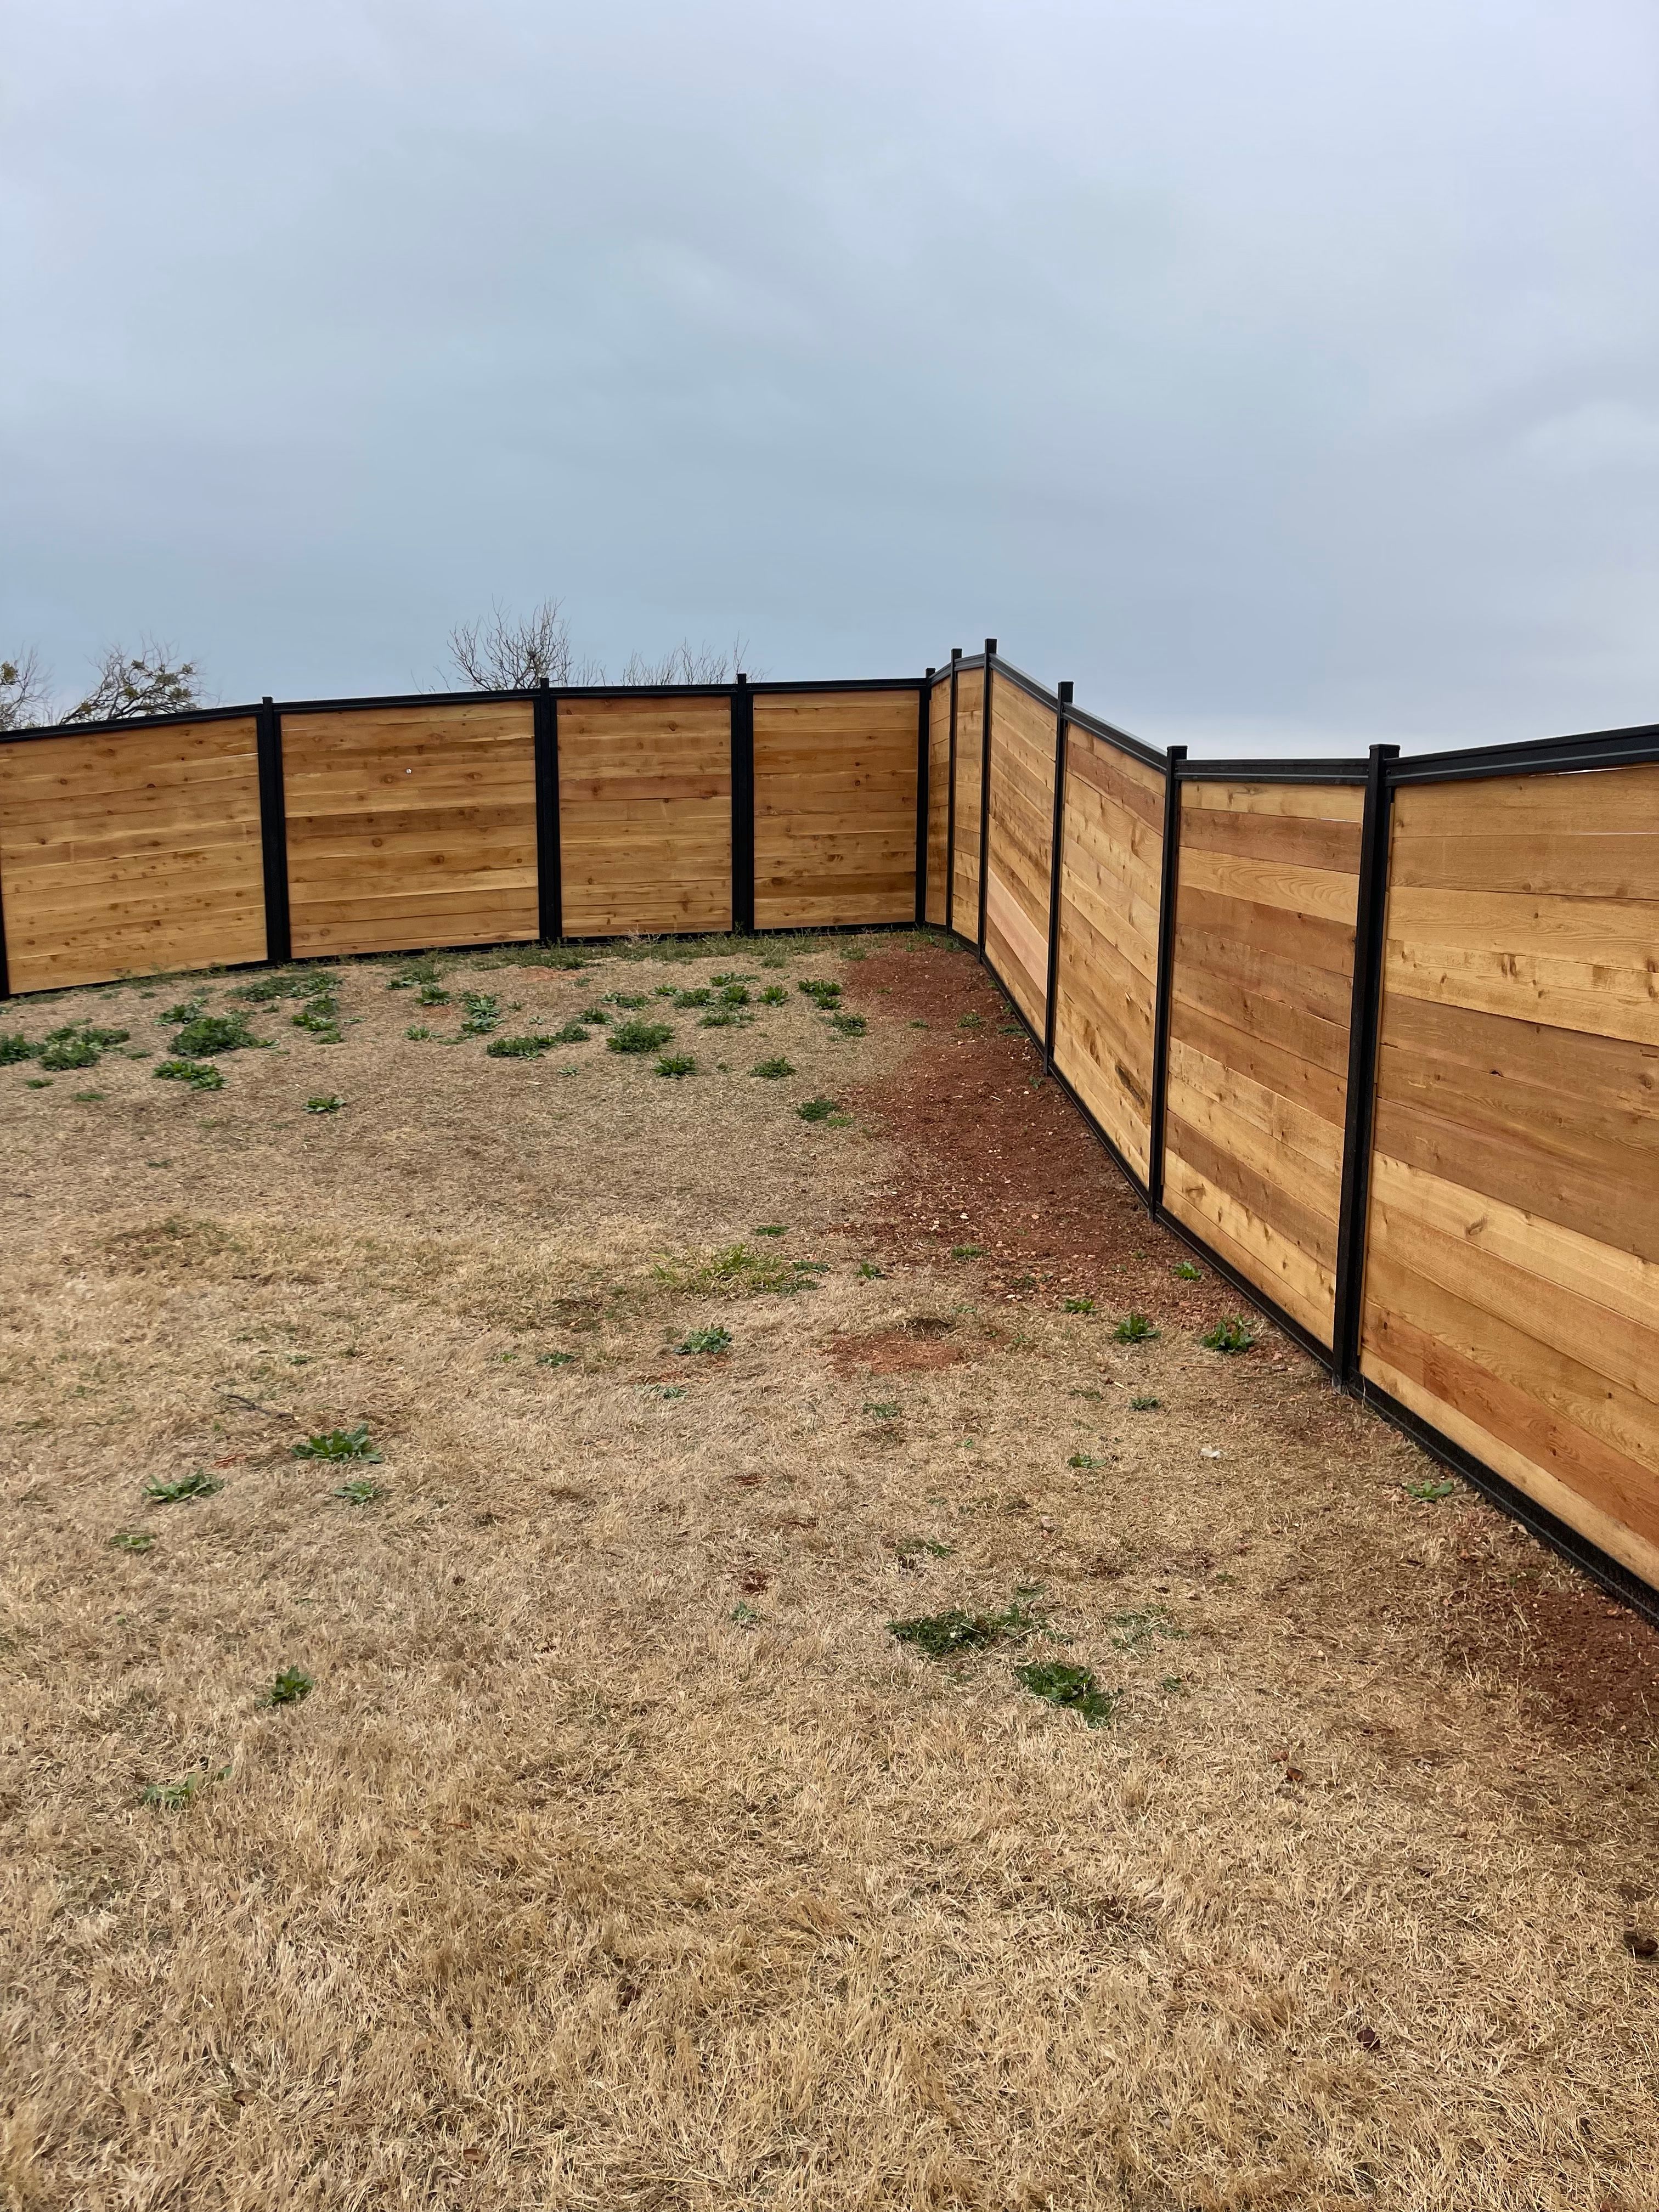 Landscaping Renovations for Elite Horizons in Abilene, TX